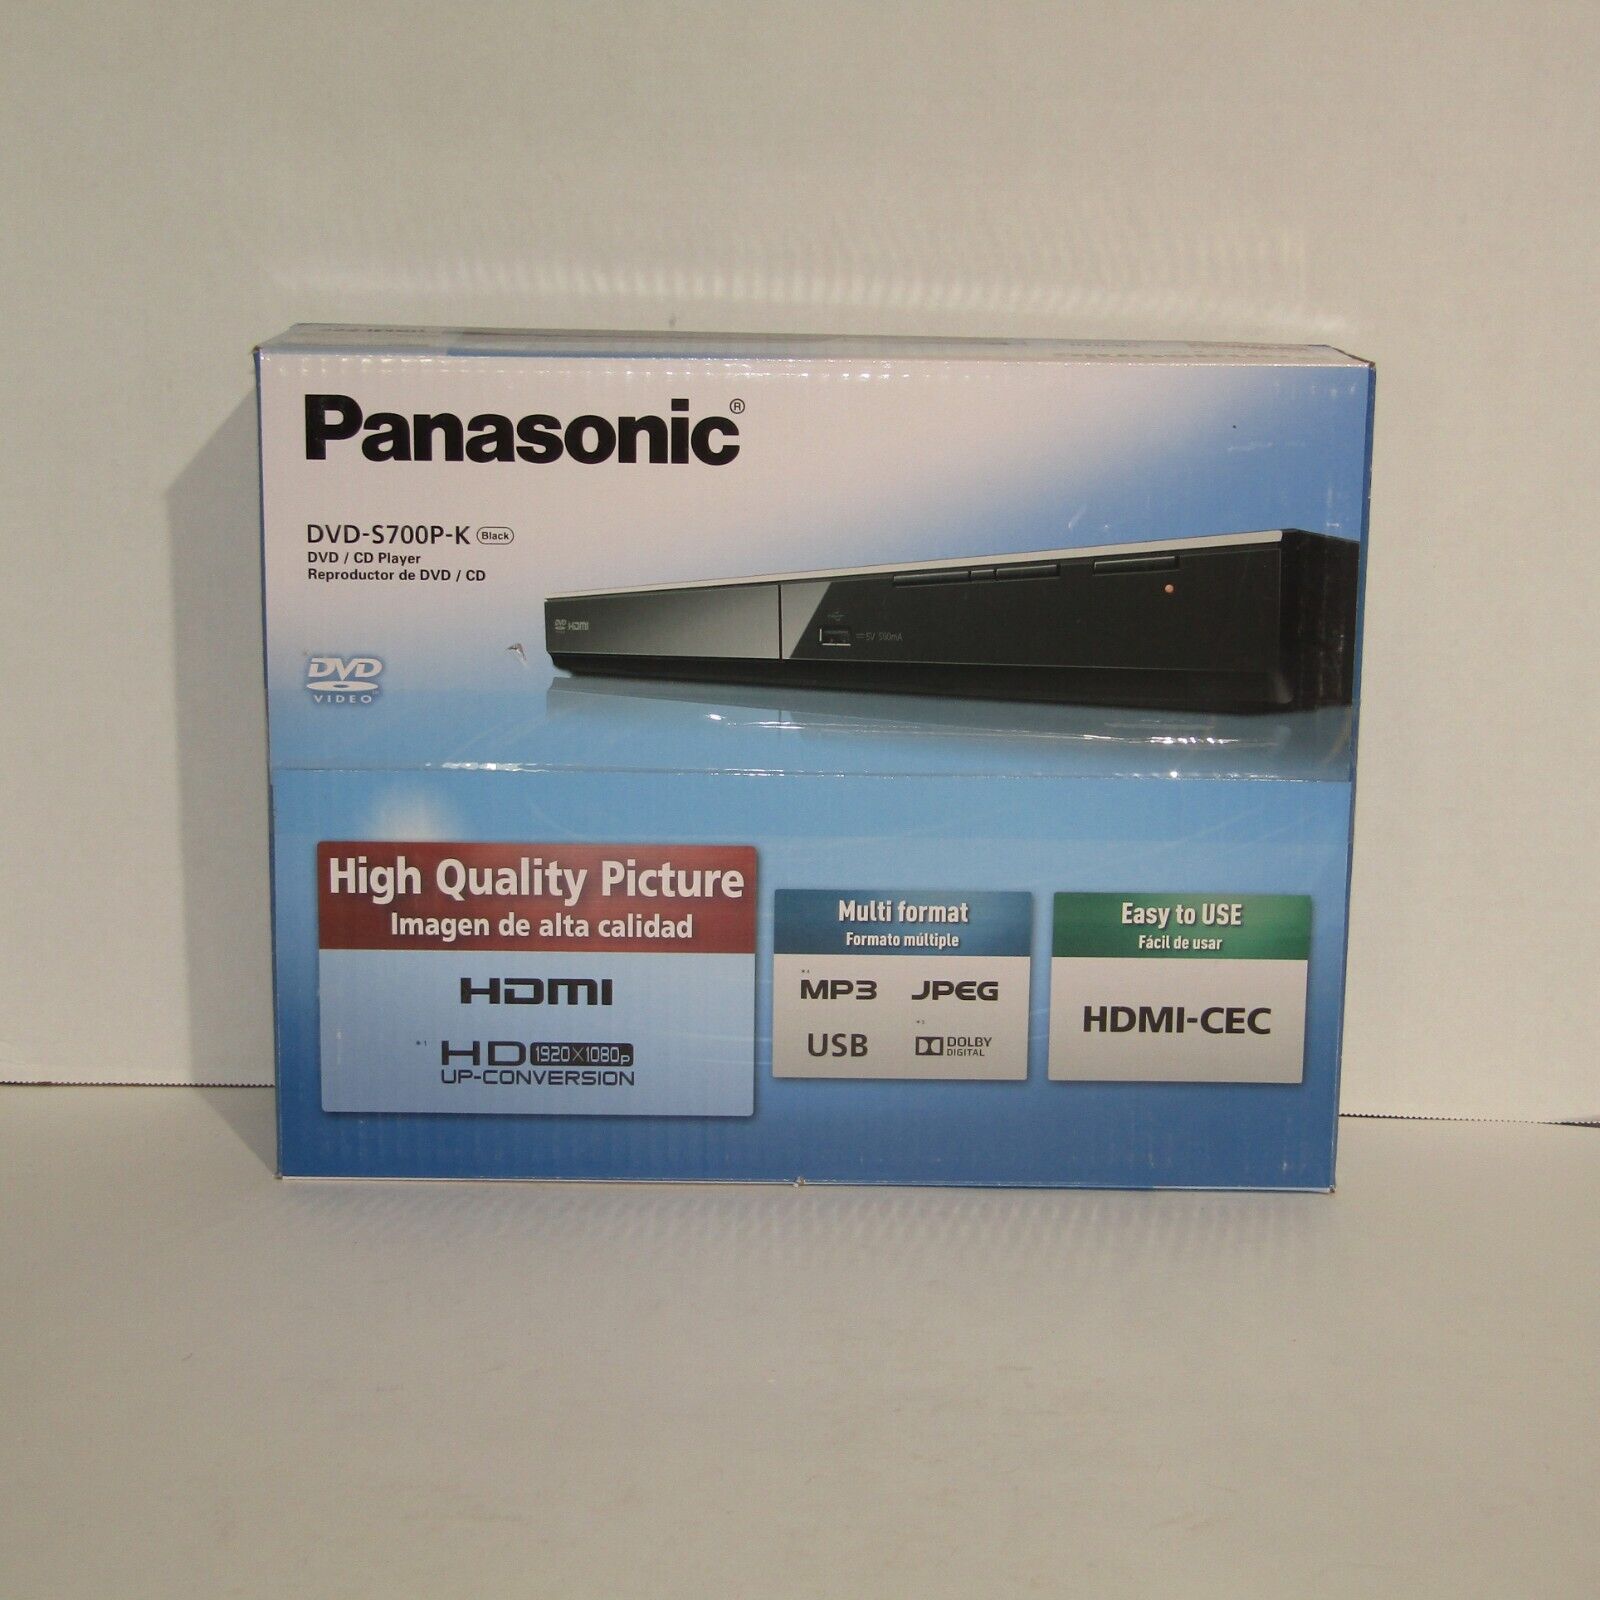 Panasonic DVD-S700P-K DVD/CD Player Black USB HDMI-CEC HD Up-Conversion MP3 JPEG